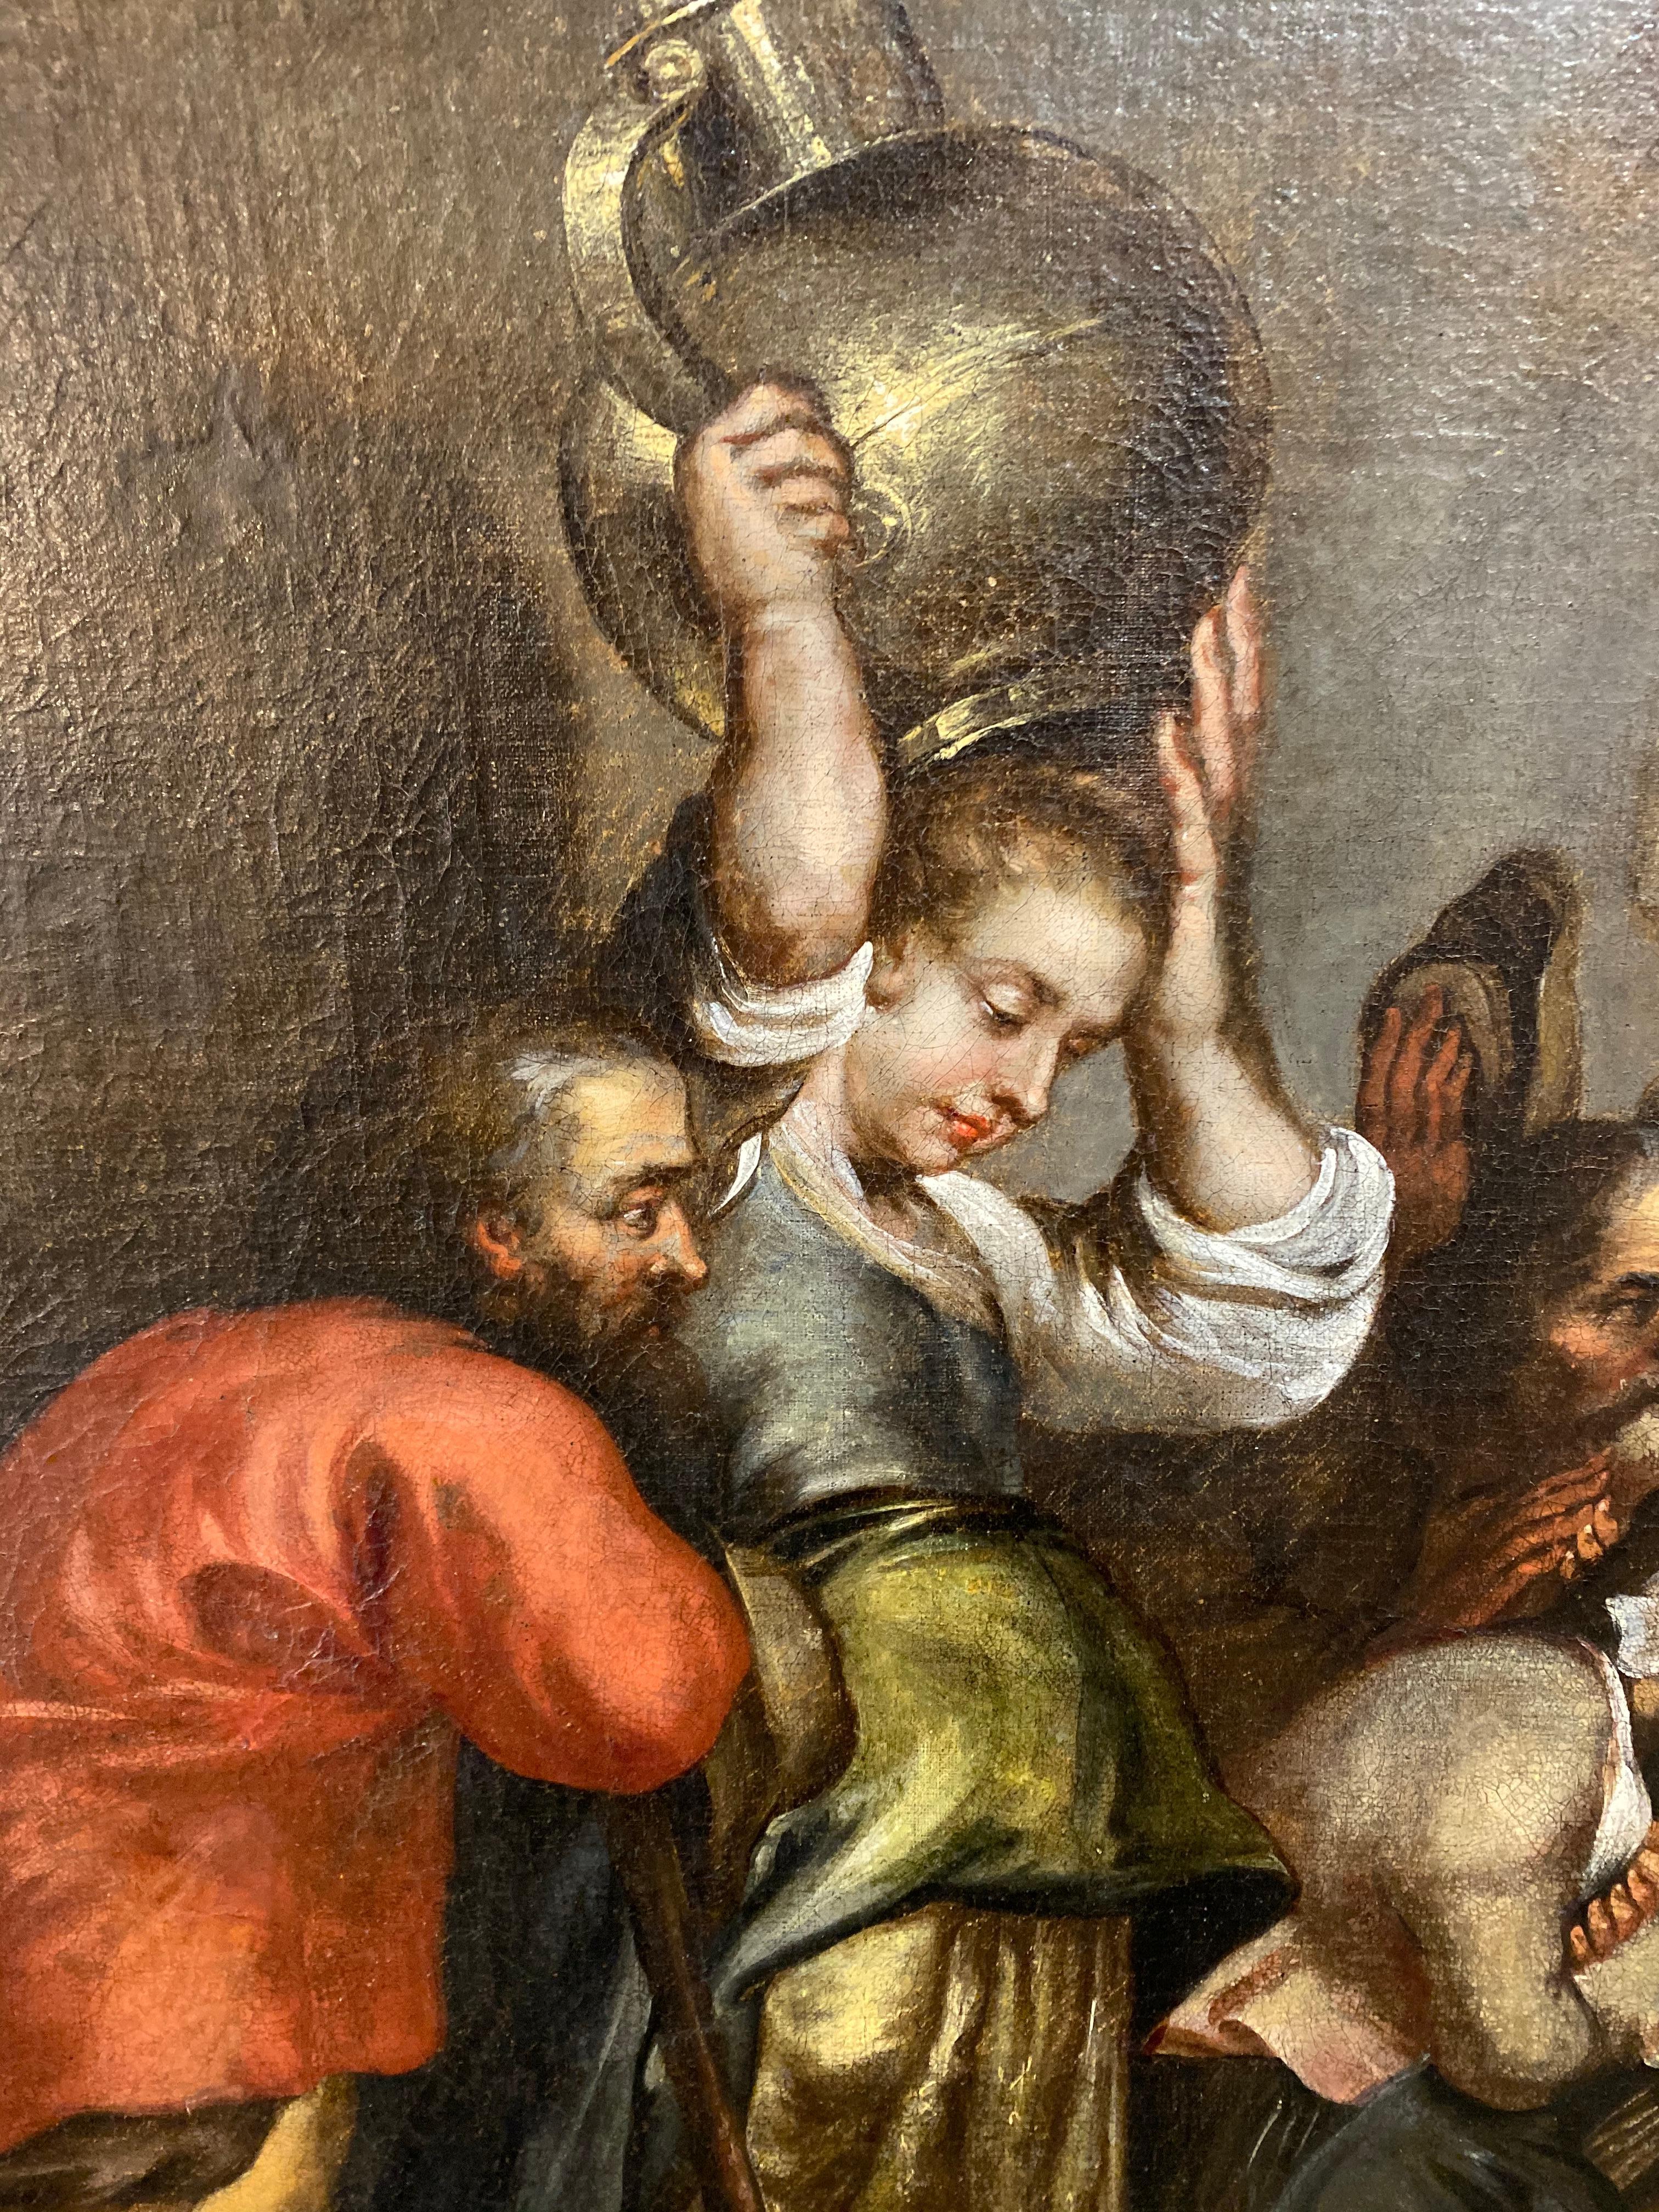 Représentant la naissance du Christ, cette peinture hollandaise est réalisée à l'huile sur toile et date de 1750. 

Mesures : 45.5